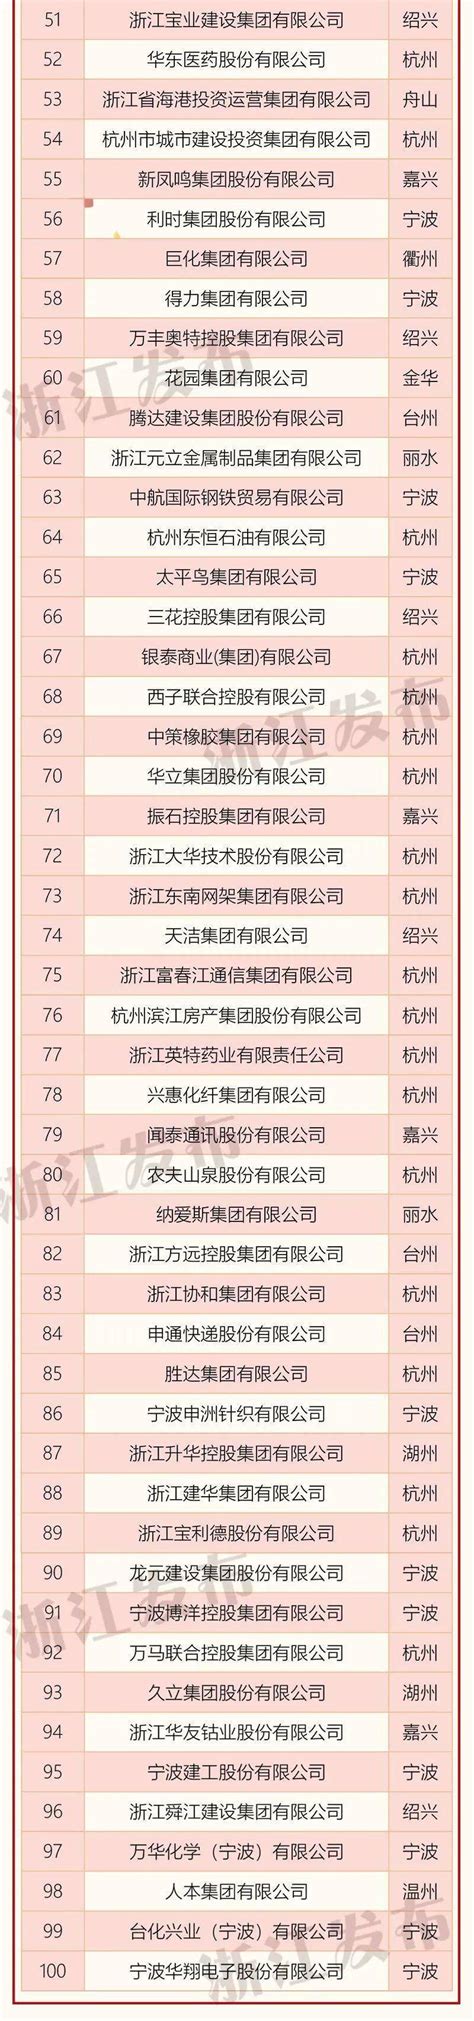 浙江省丽水市市场监管局公布55户企业强制注销企业名单-中国质量新闻网